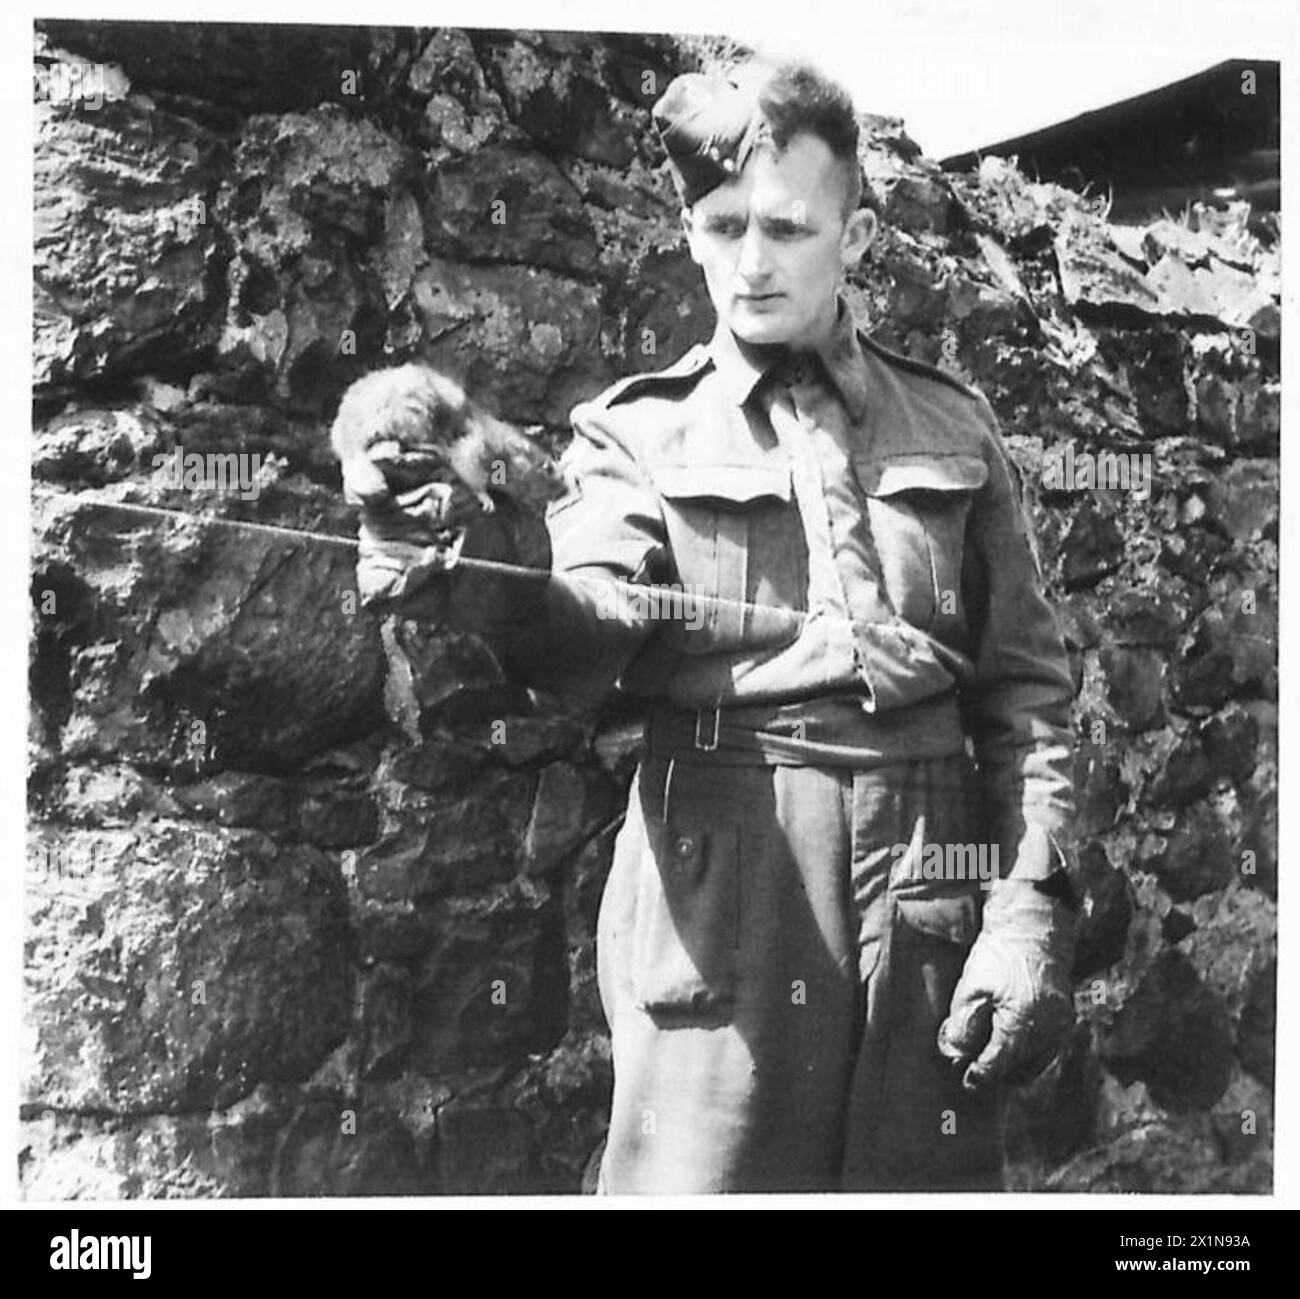 L'ESERCITO BRITANNICO IN GRAN BRETAGNA, 1939-1945 - la squadra era probabilmente l'unica unità nota di distruzione dei topi nell'esercito britannico fino alla data in cui è stata scattata questa foto. Lance caporale Chadwick, un topo cather dalla sua professione civile (come lo era anche suo padre), aveva un certo numero di furetti e cani addestrati a sua disposizione. Era nativo di Bolton, Lancashire. Lance Caporale A. Chadwick della Rat Destruction Squad, Army Department Hygiene Northern Ireland, con un furetto, uno degli animali della sua unità, 16 luglio 1943, British Army Foto Stock